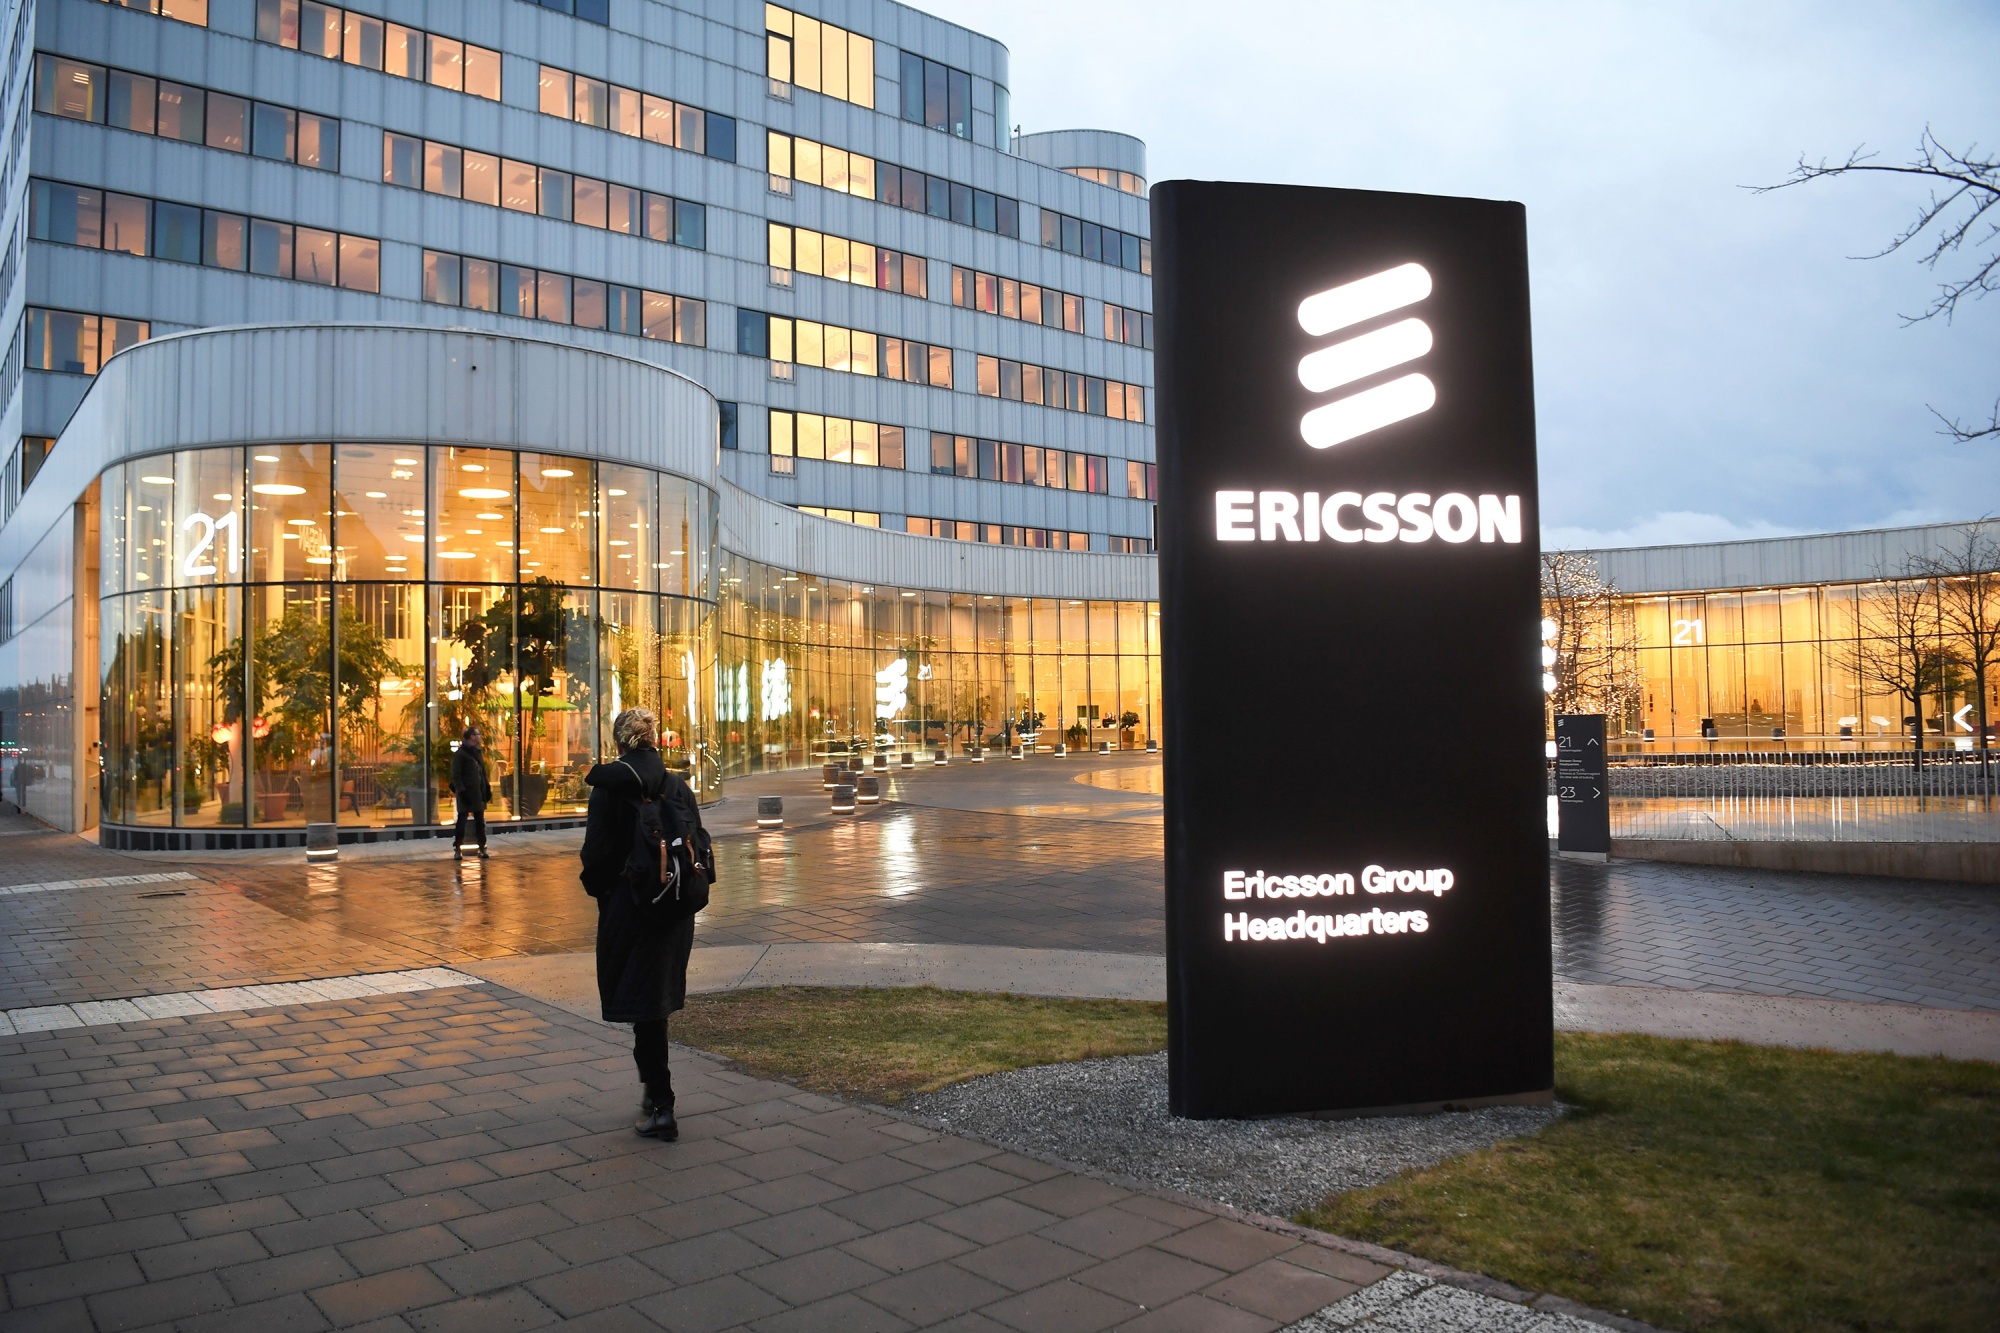 Ericsson dự kiến kiếm được 1 tỷ USD doanh thu về sở hữu trí tuệ sau thương vụ với Huawei